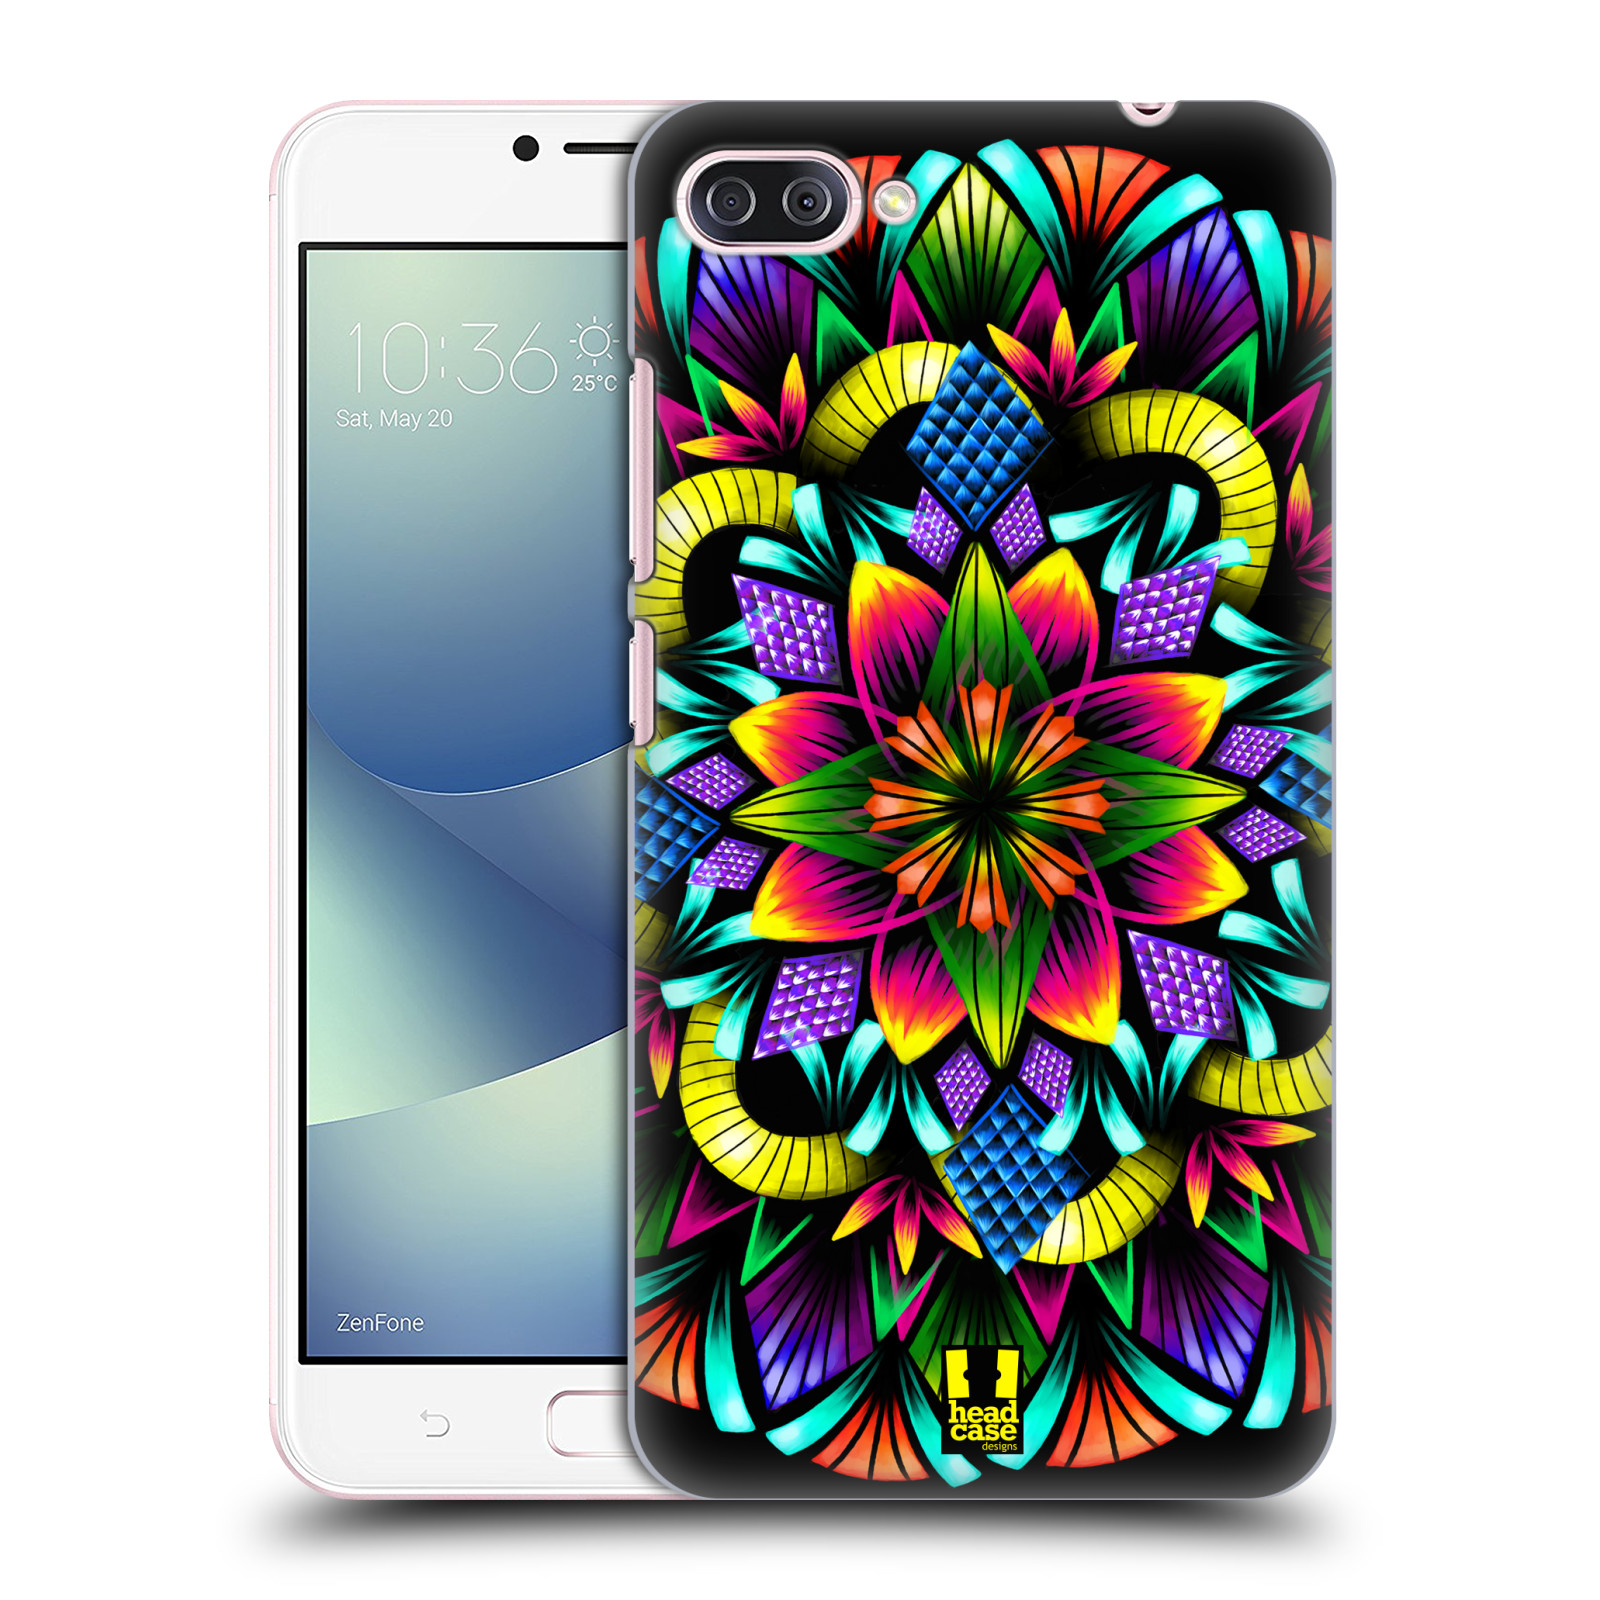 HEAD CASE plastový obal na mobil Asus Zenfone 4 MAX ZC554KL vzor Indie Mandala kaleidoskop barevný vzor KVĚTINA